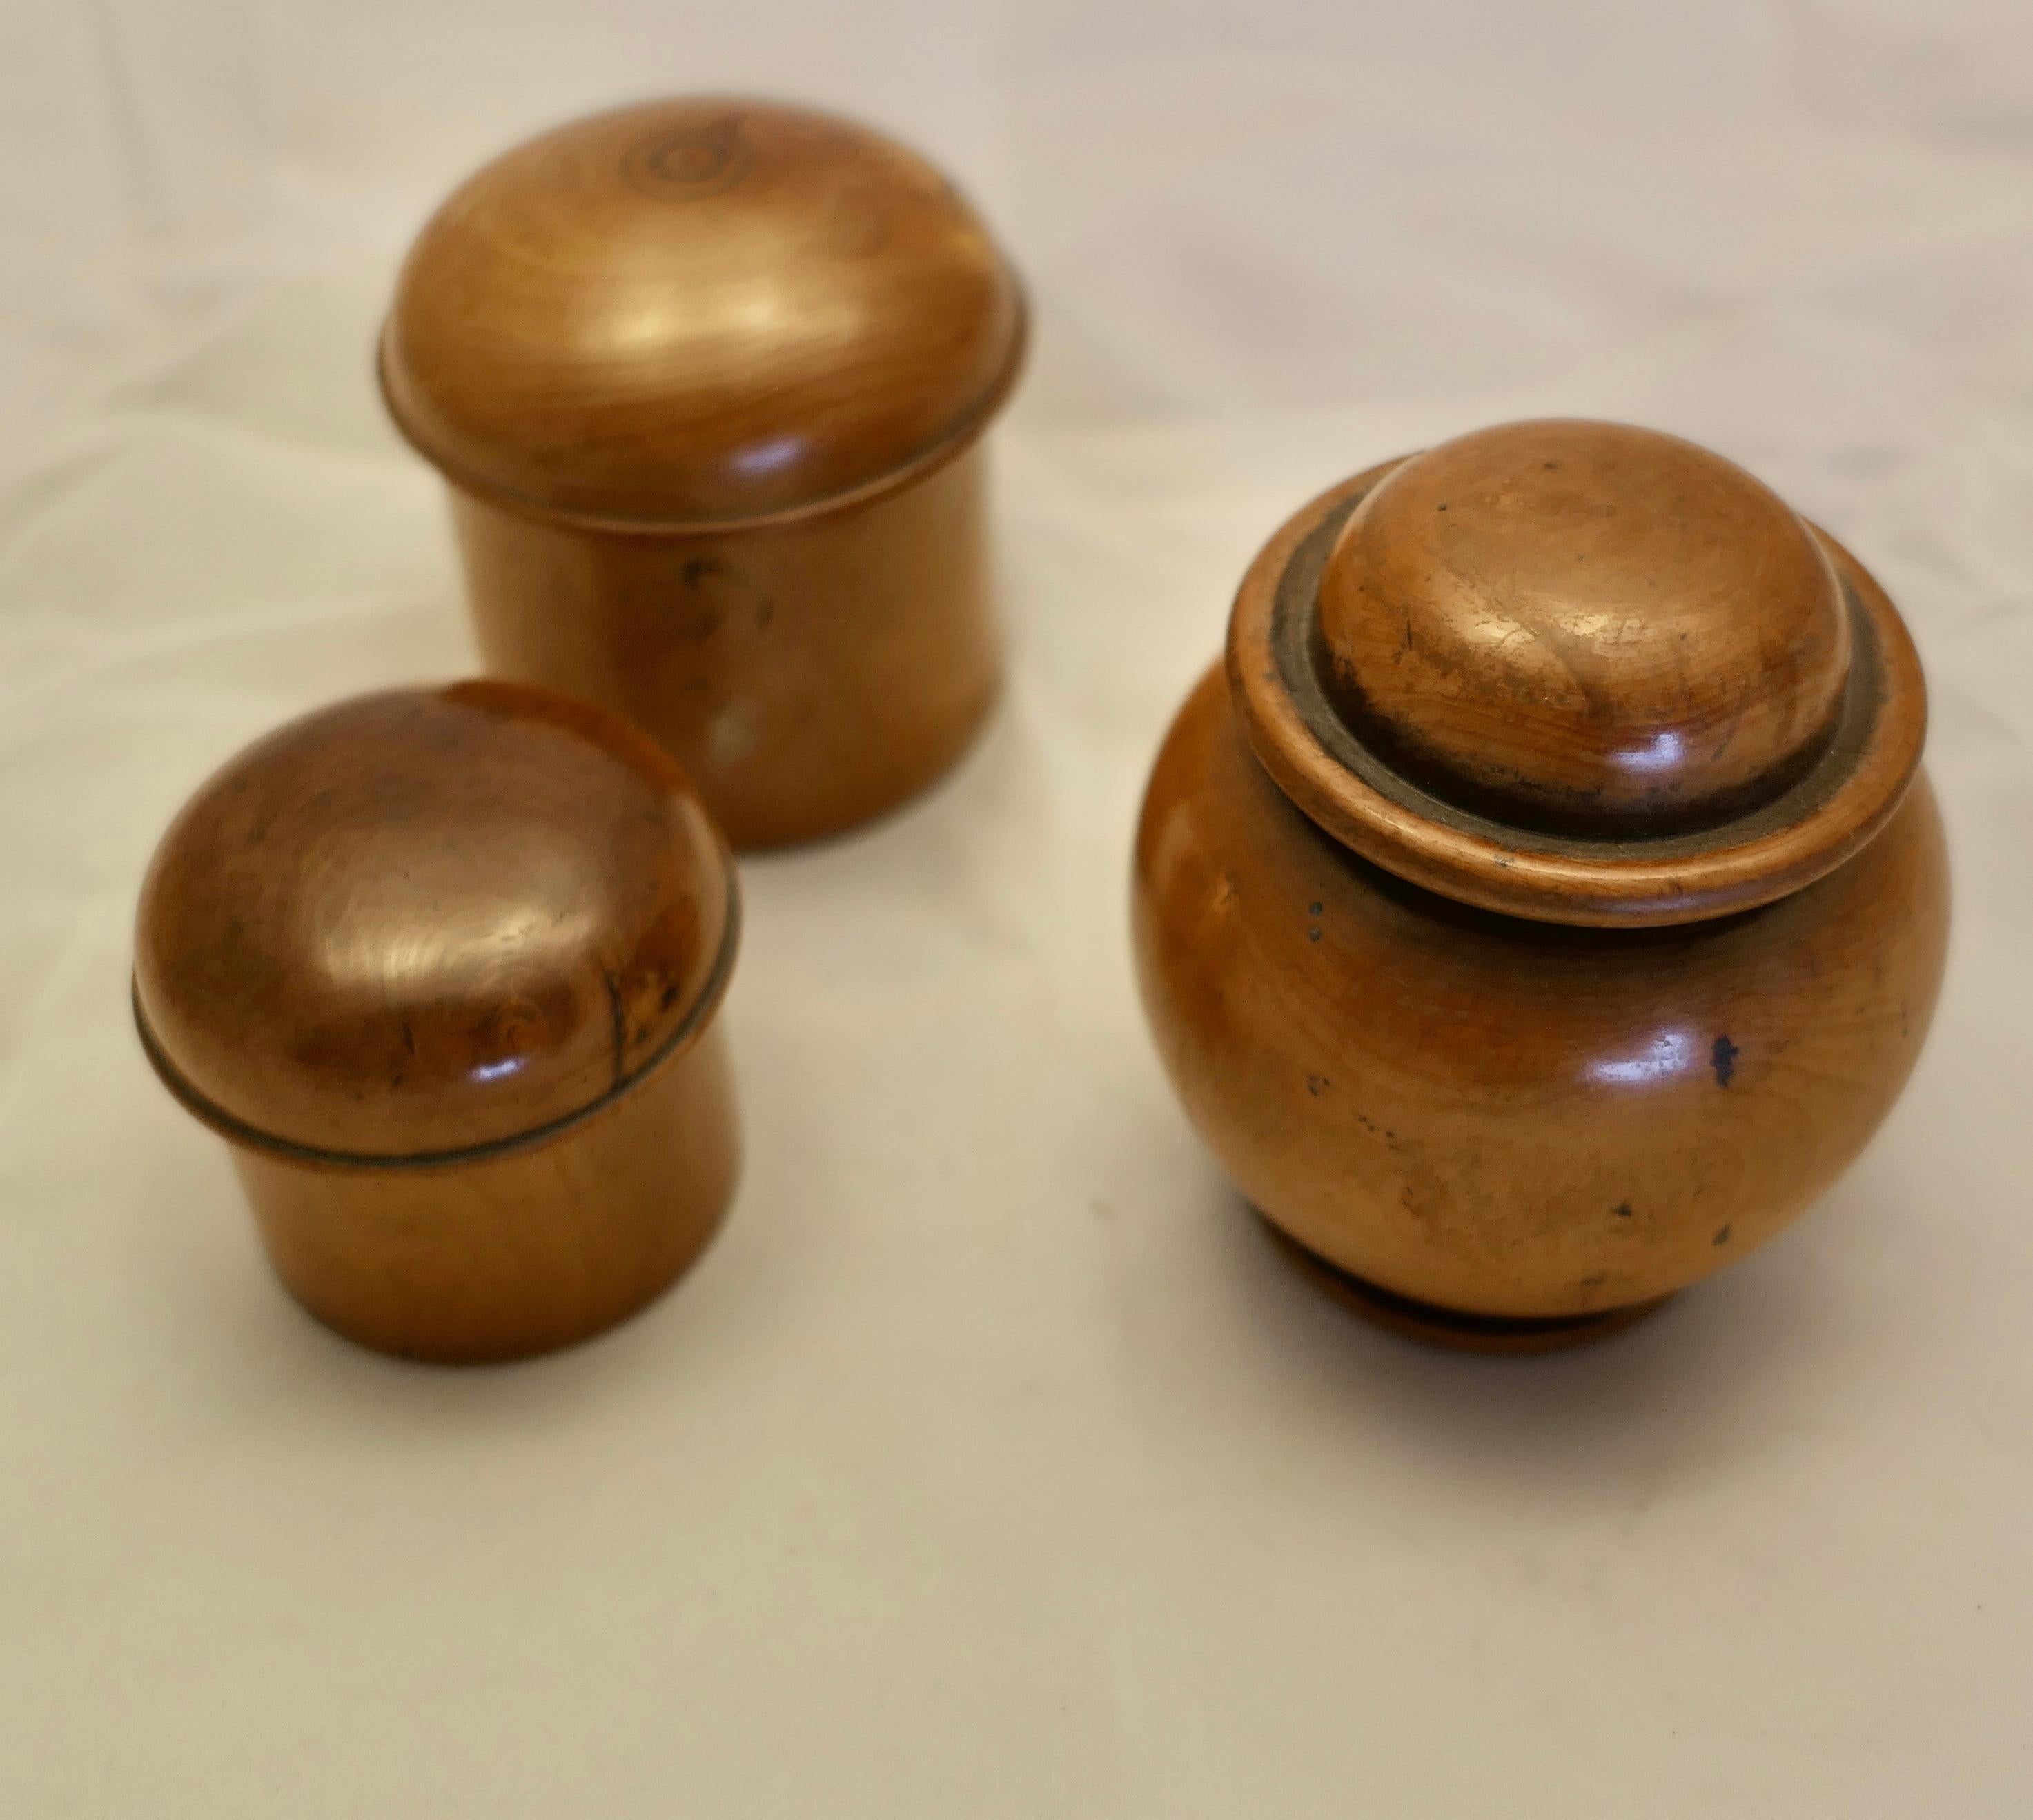 3 pots en sycomore avec couvercles, faits à la main

Les pots ont une couleur riche et sont très attrayants
Le pot de style Ali Baba est le plus grand, il mesure 3,5 pouces de haut et 3 pouces de diamètre.

Fabriqué à la main et charmant
SC82